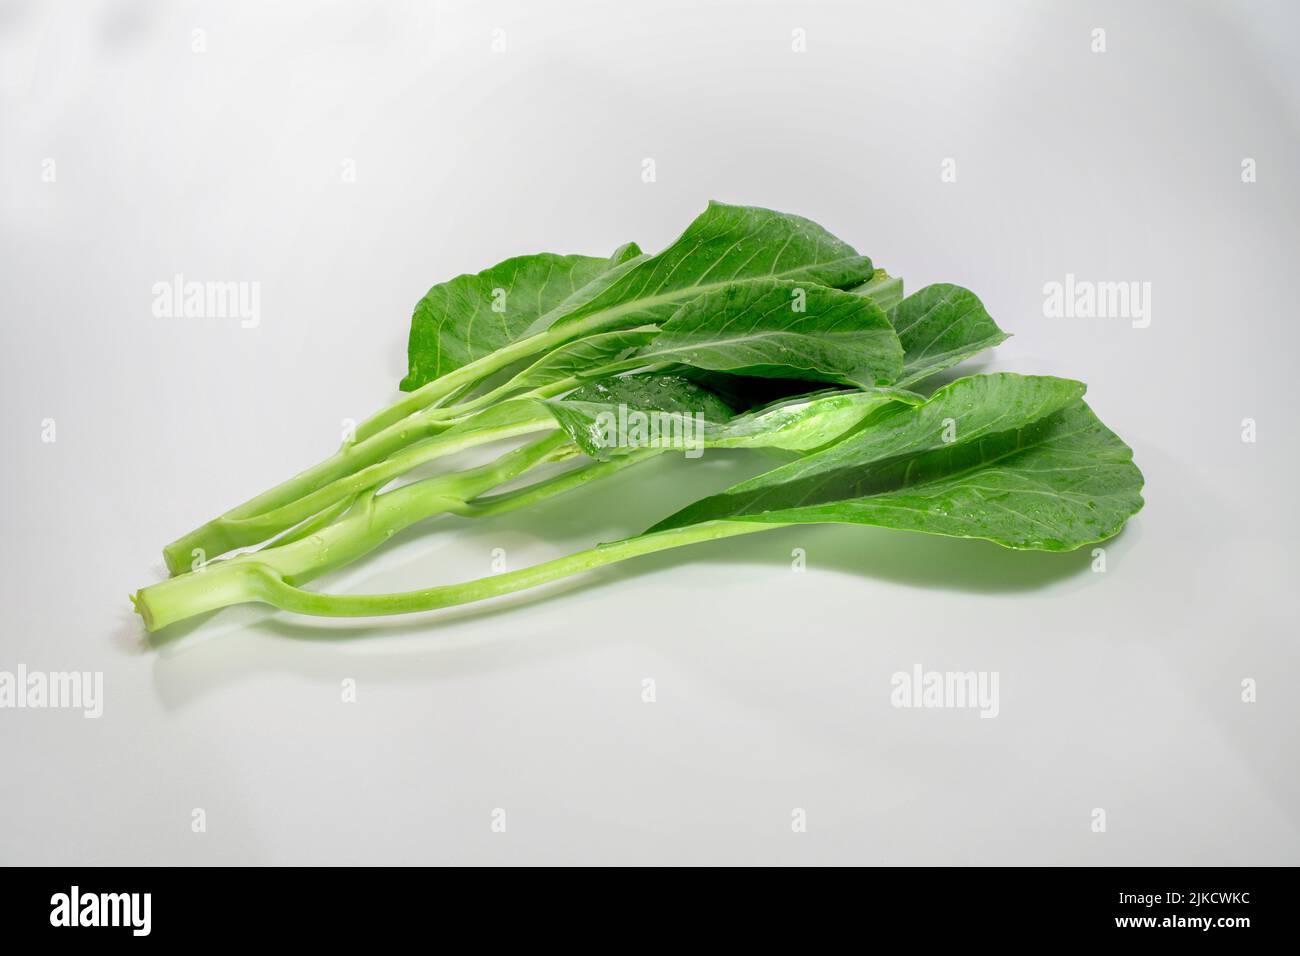 Grüner und frischer chinesischer Grünkohl, chinesisches Brokkoli-Gemüse isoliert auf weißem Hintergrund, verstärken den natürlichen Geschmack des Grüns. Stockfoto